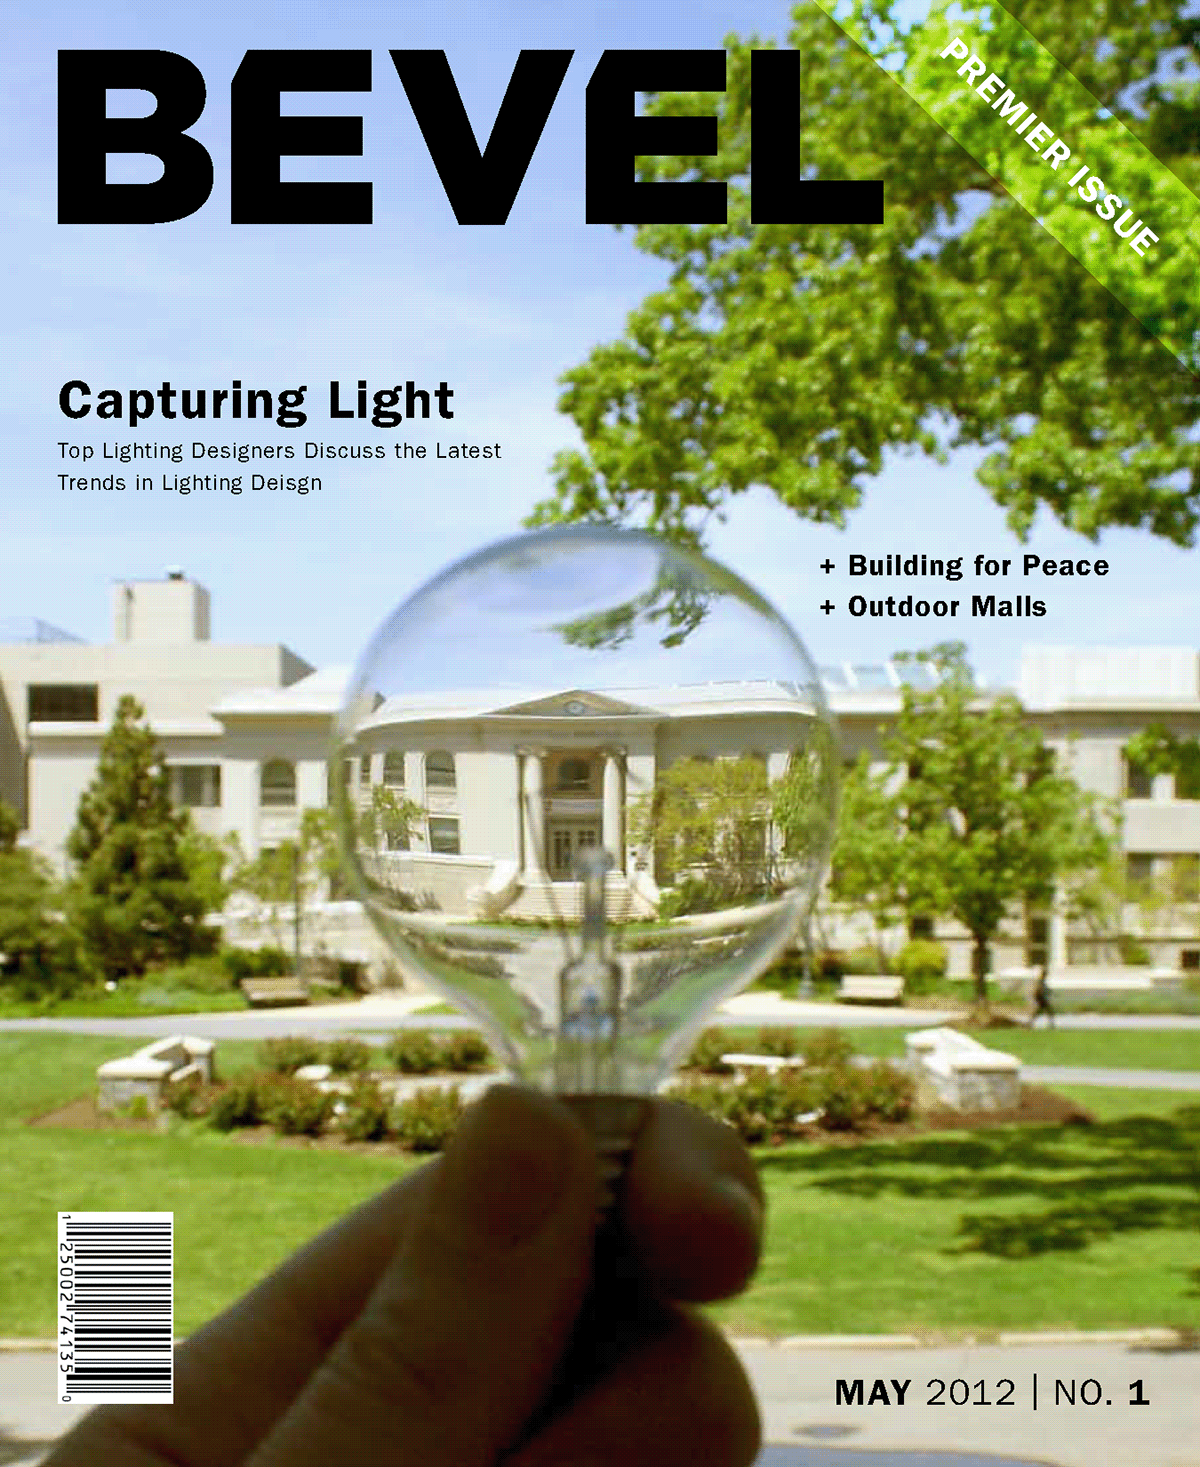 bevel magazine publication